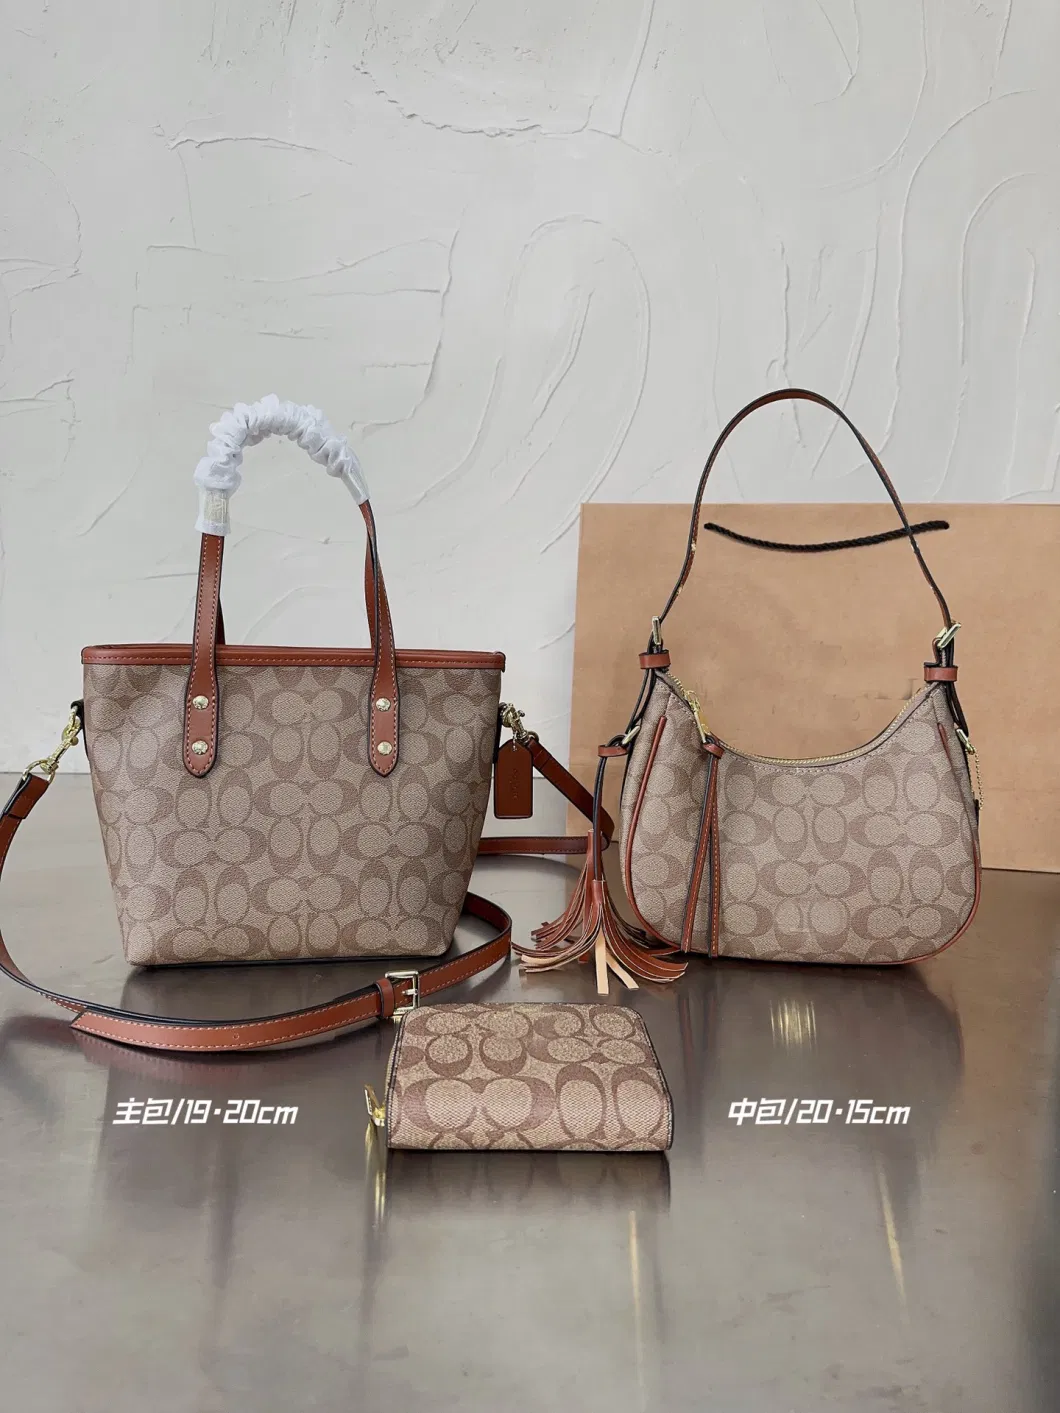 Ladies Fashion Casual Designe Luxury Handbag High Quality Shell Bag Purse Pouch